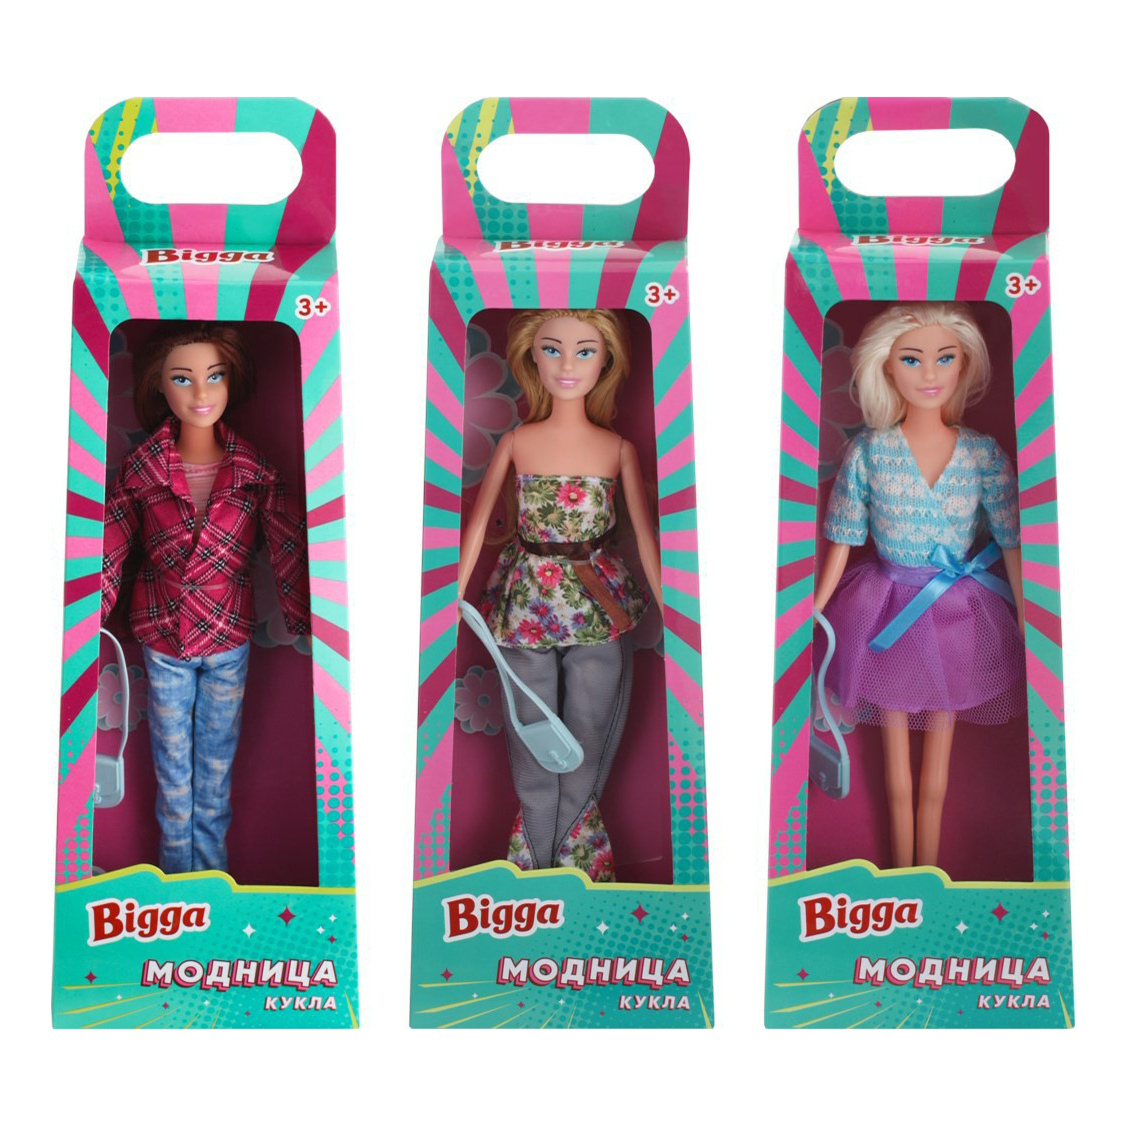 Игровой набор Bigga Кукла-модница в ассортименте